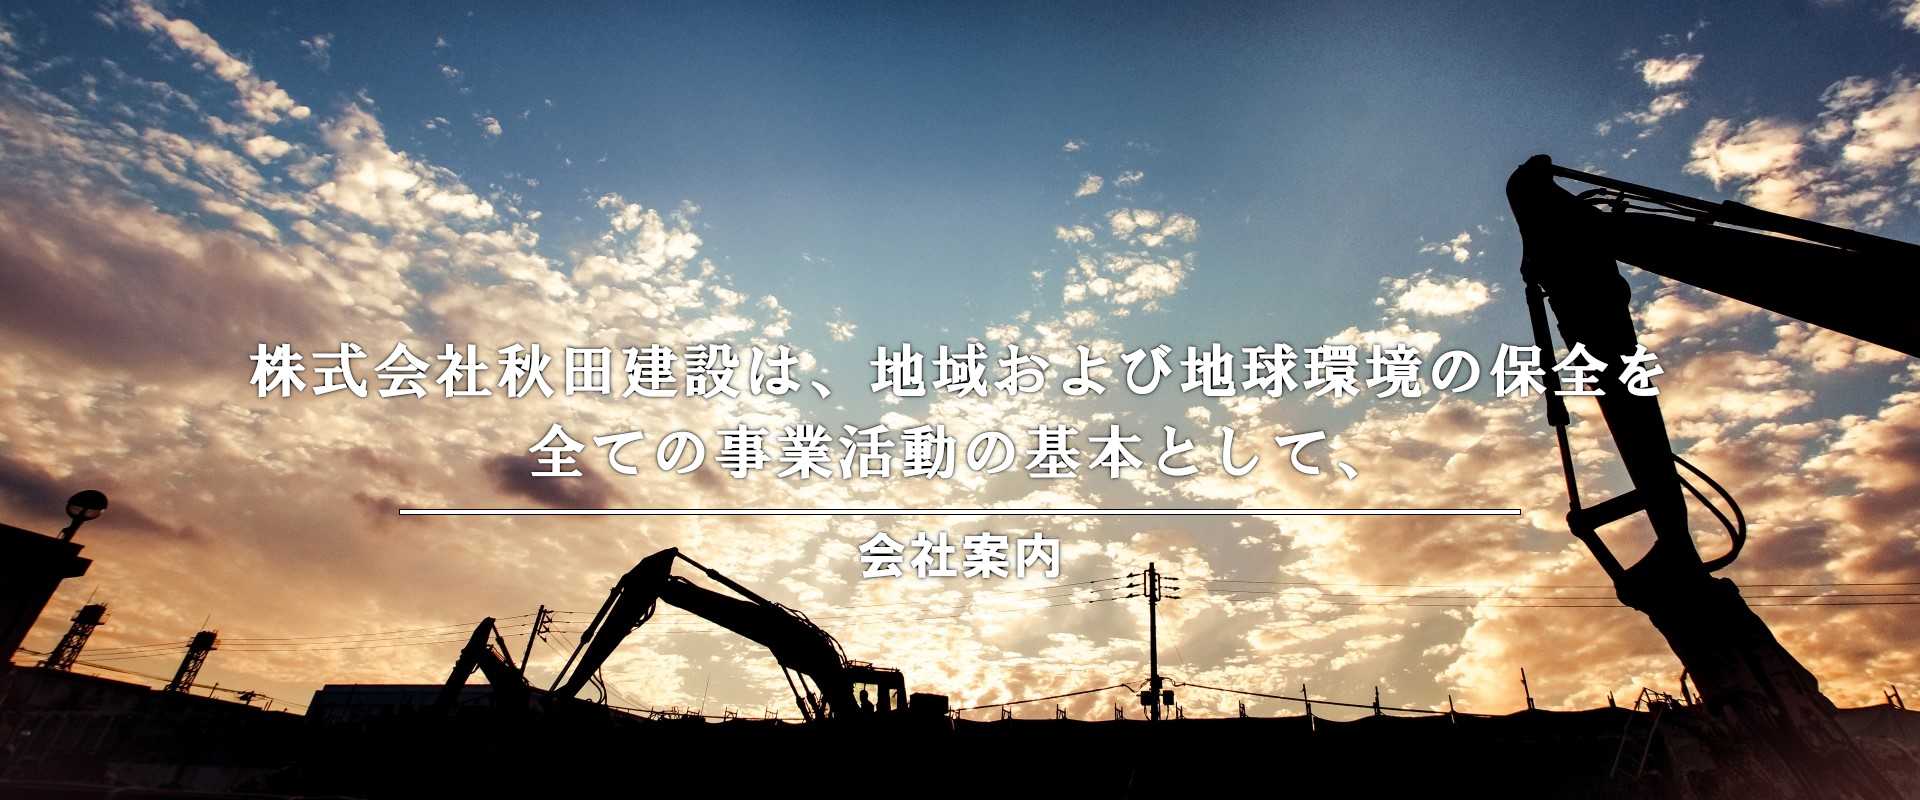 株式会社秋田建設は、地域および地球環境の保全を全ての事業活動の基本として、